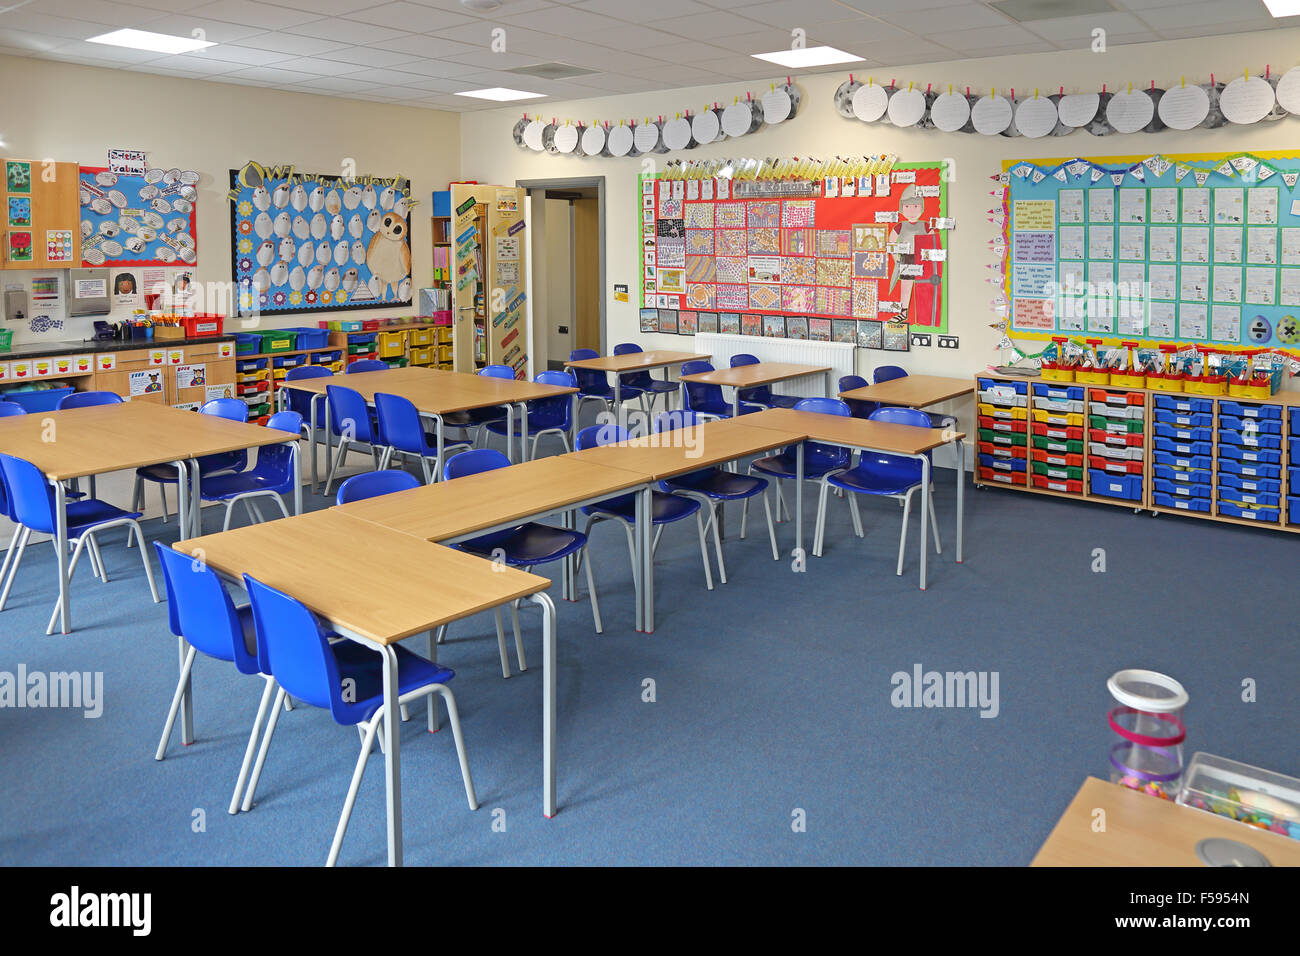 Ein Klassenzimmer in einem neu gebauten UK junior Schule. Schreibtische, Stühle und bunten Schubladen zeigt. Kinder Kunst umfasst die Wand Stockfoto